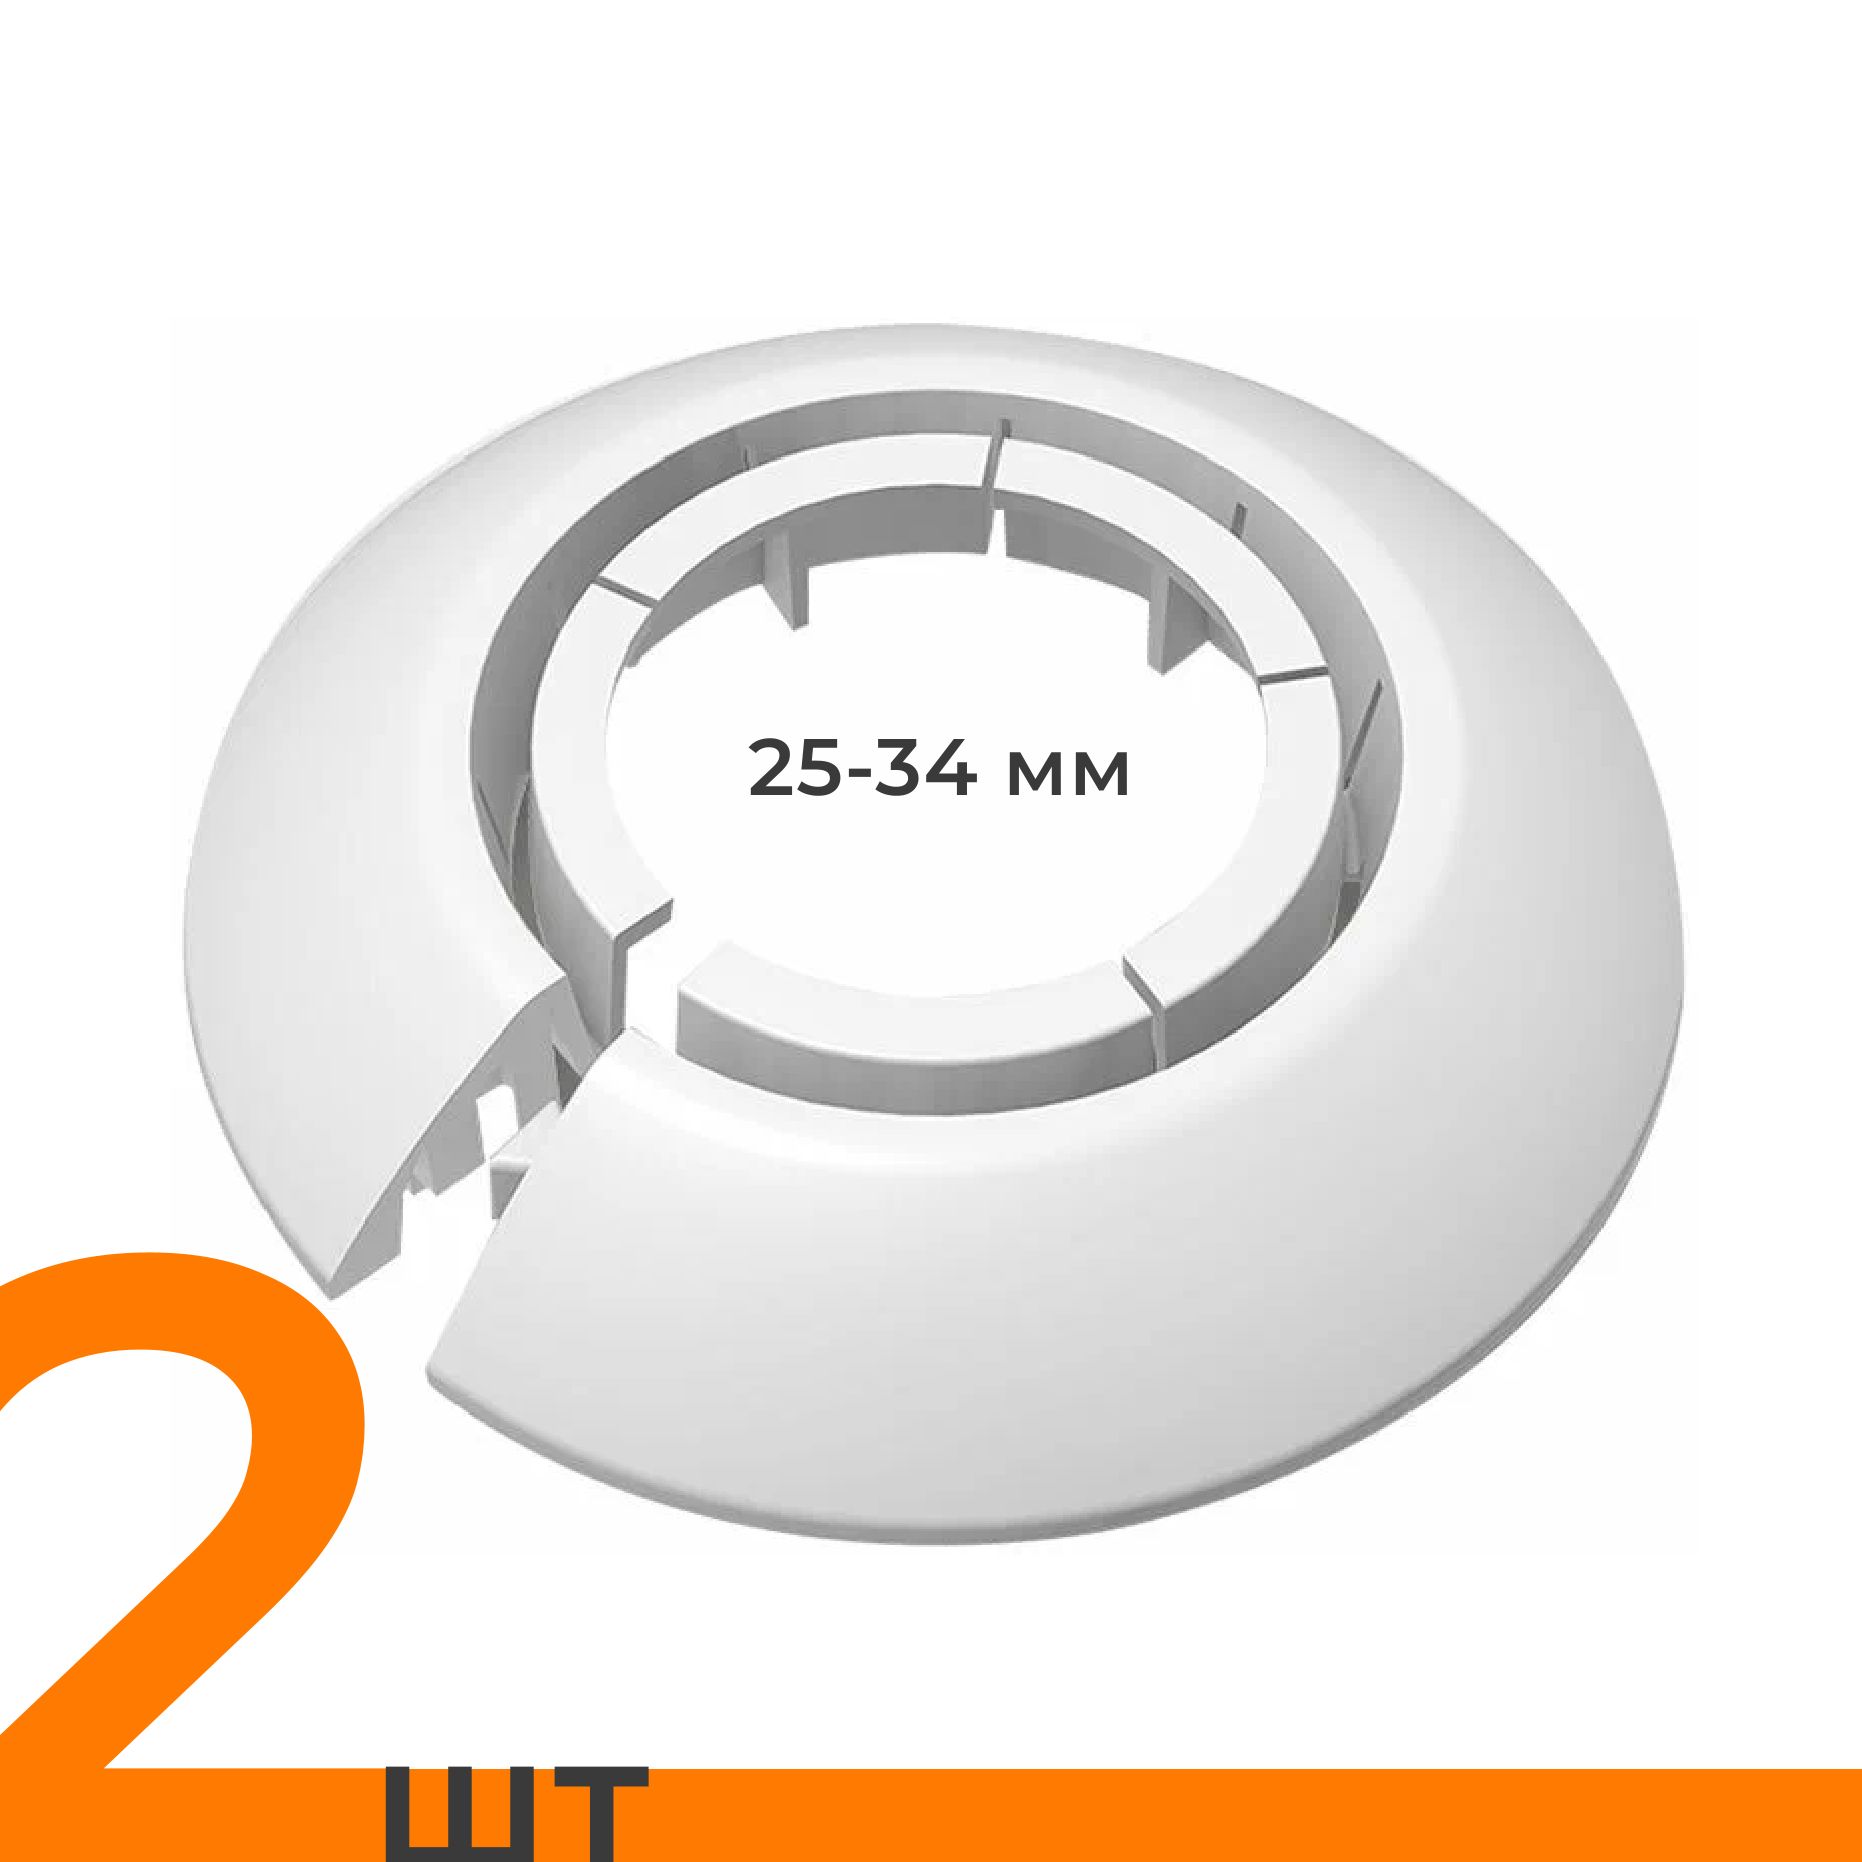 ОбводуниверсальныйIDEAL(Идеал)белый,накладка(розетта)длятруб25-34мм-2шт.